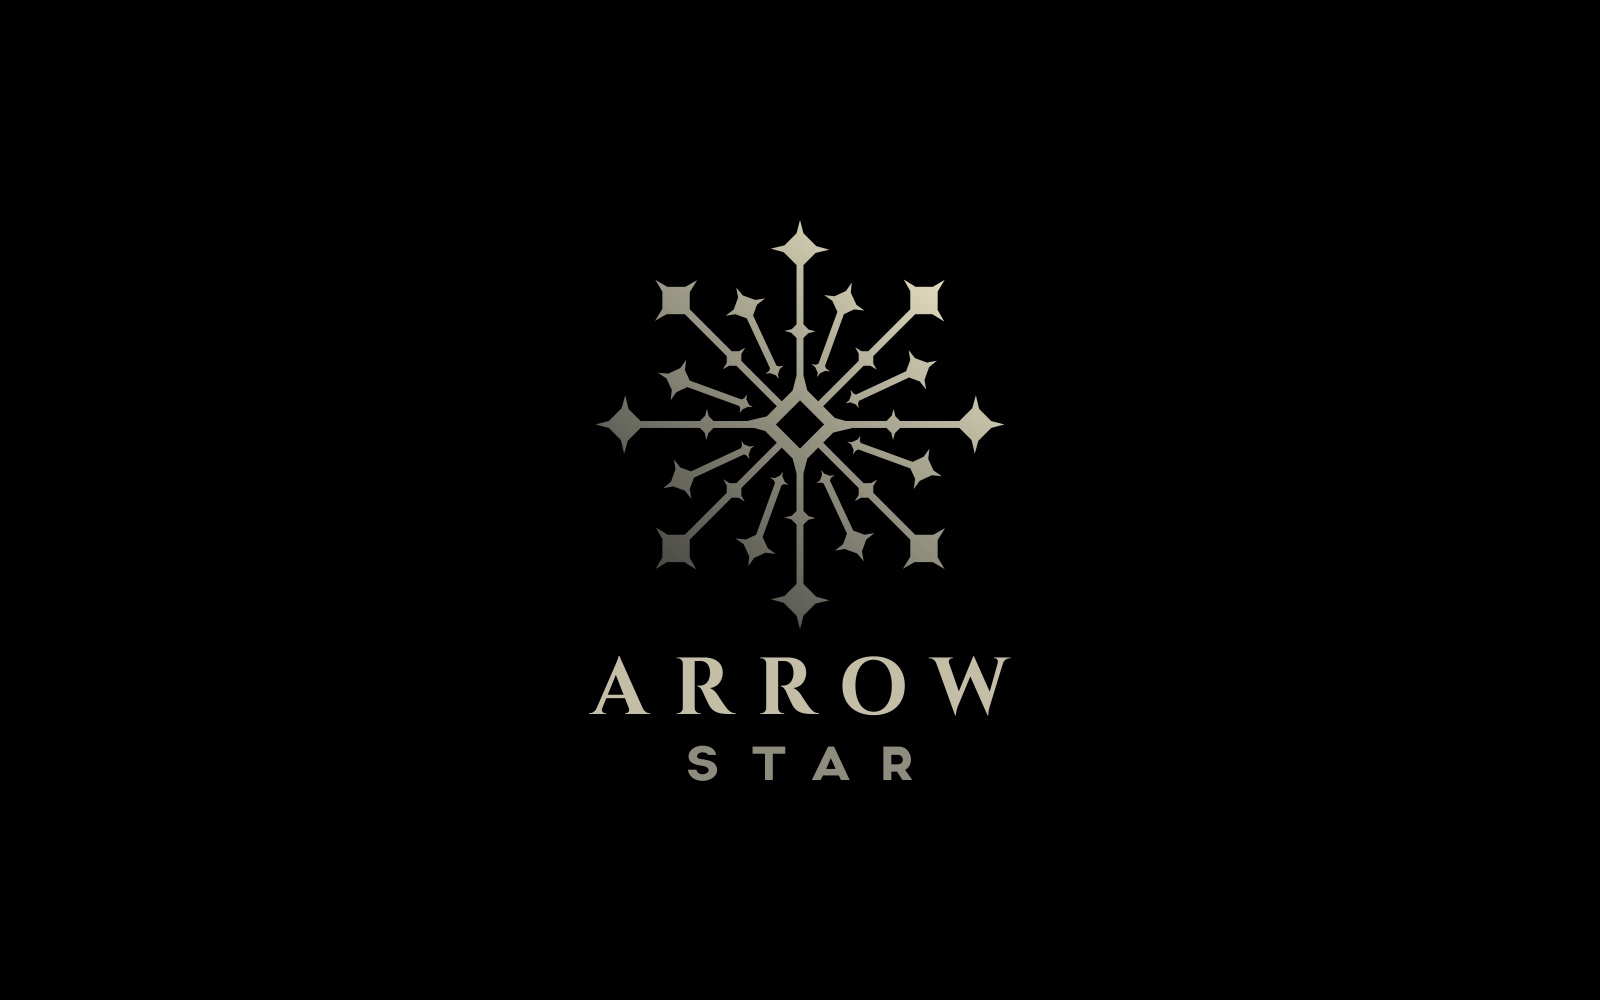 Arrow Star Logo Template